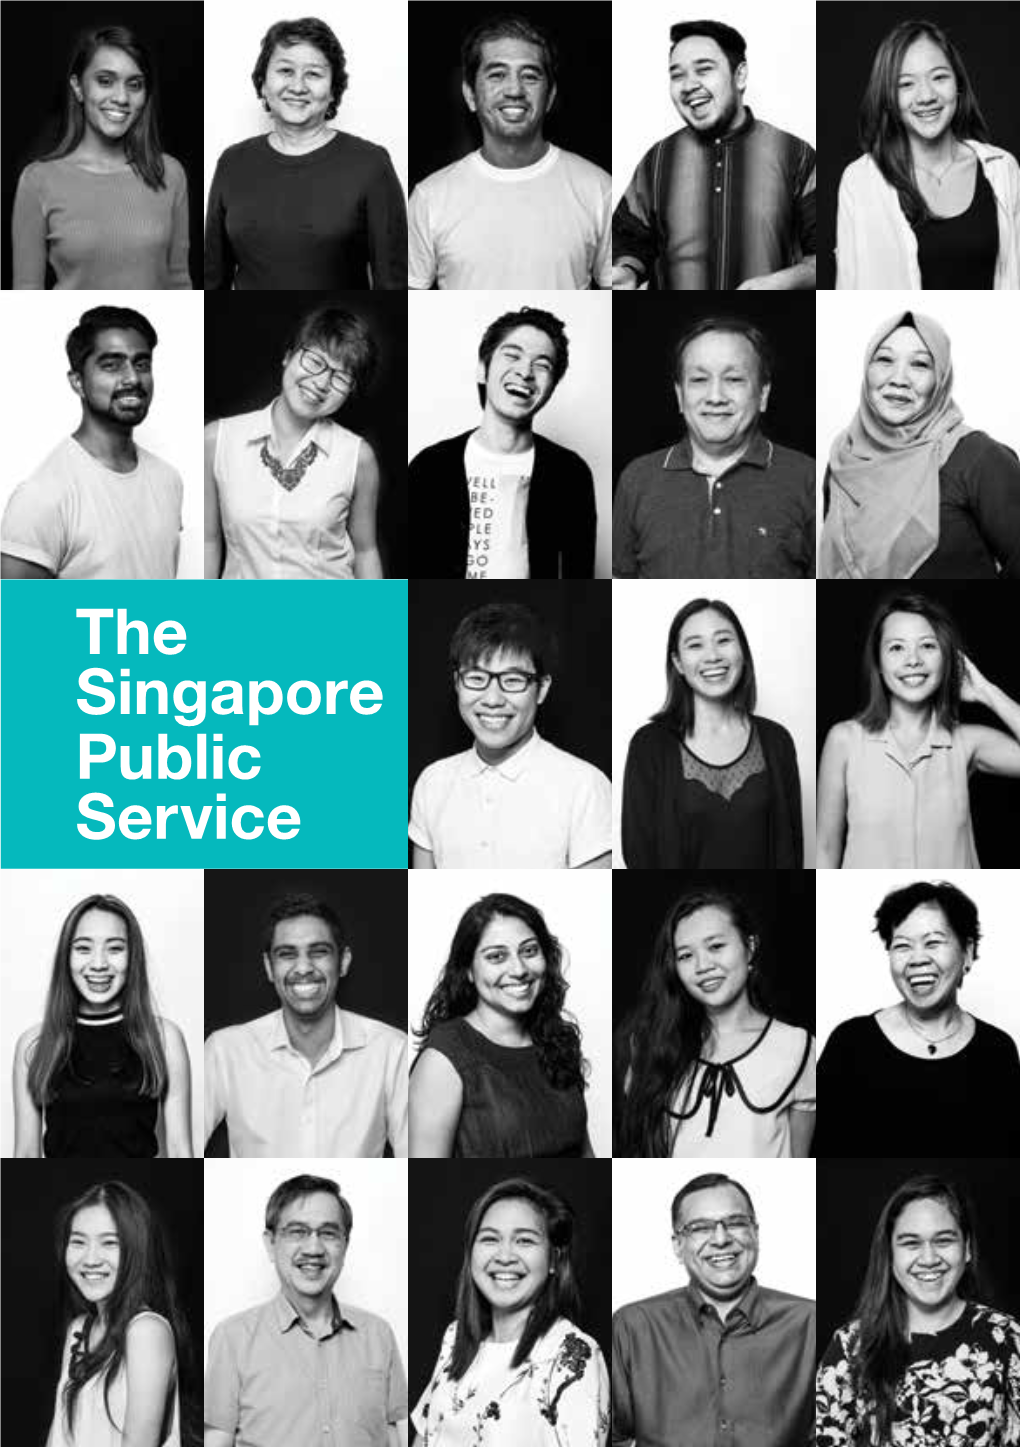 The Singapore Public Service